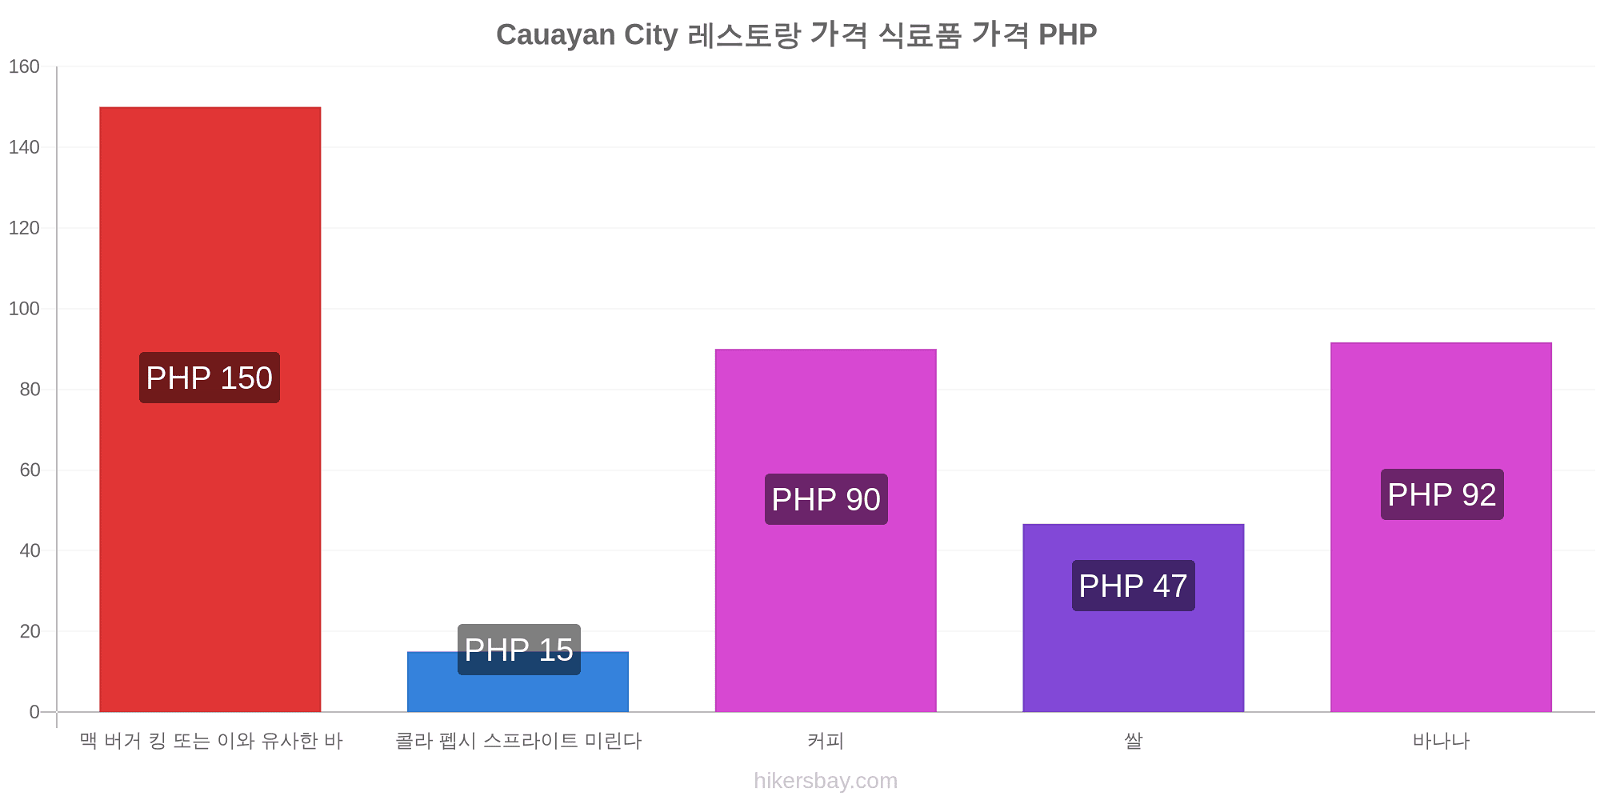 Cauayan City 가격 변동 hikersbay.com